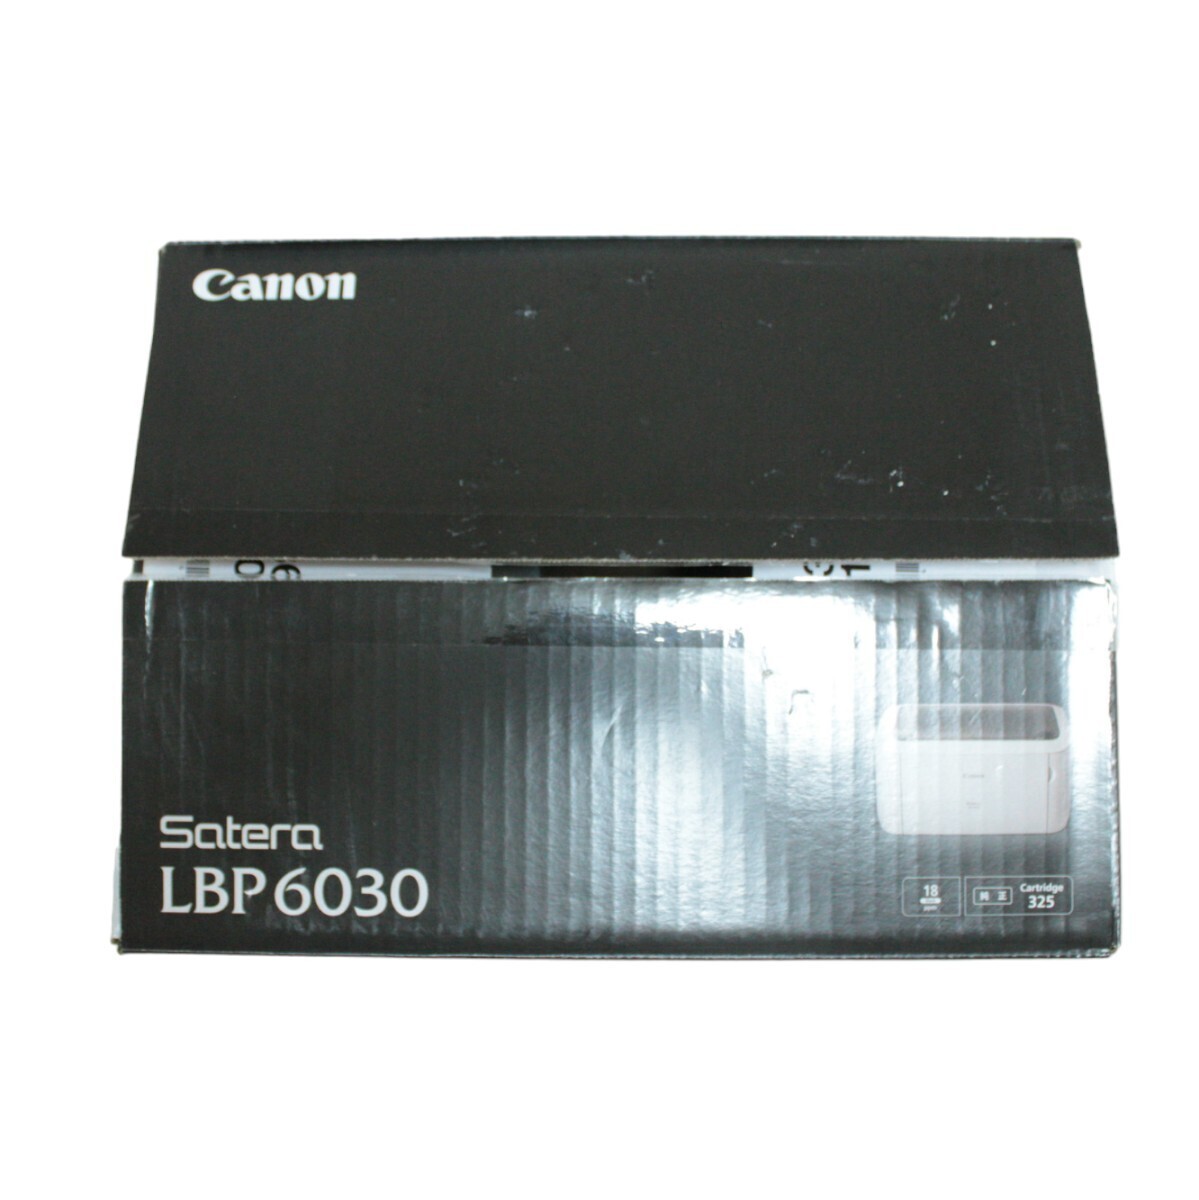 ほぼ未使用◎CANON Satera LBP6030 A4 モノクロレーザープリンター キヤノン 